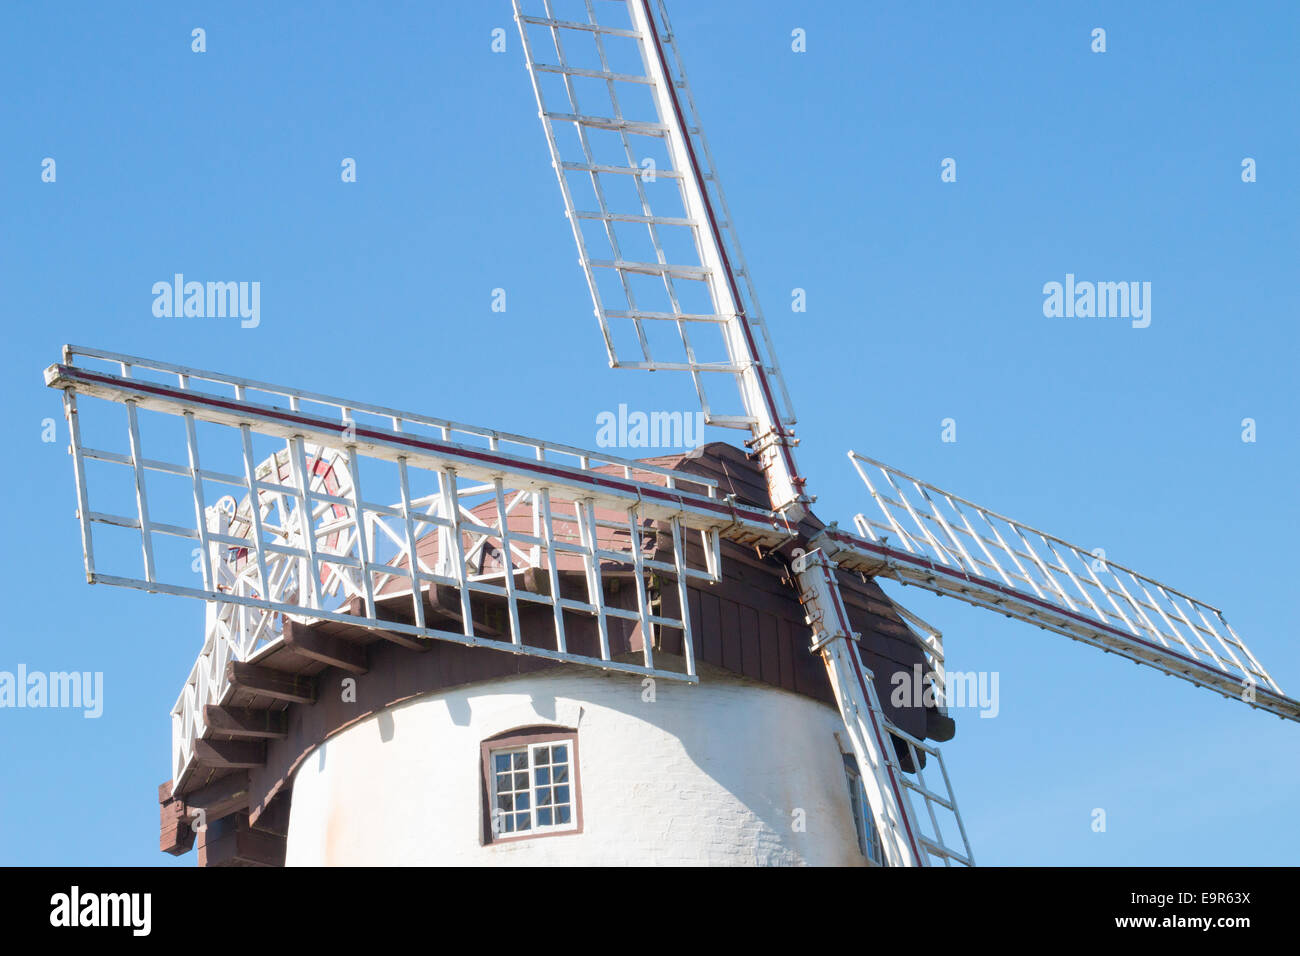 historic windmill in Launceston,Tasmania Australia Stock Photo